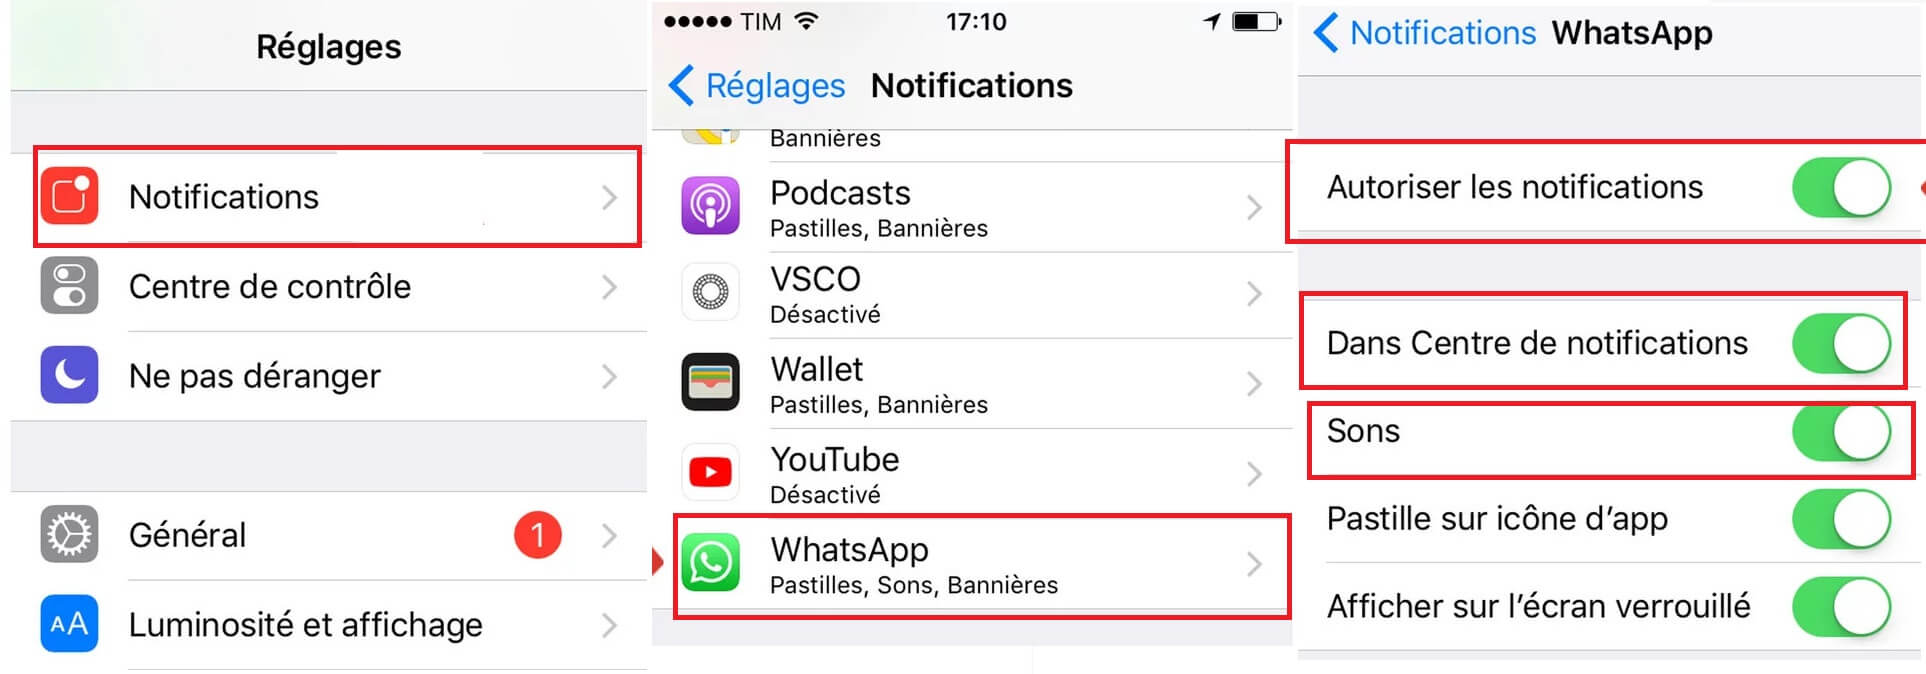 Vérifiez les réglages de notifications de WhatsApp